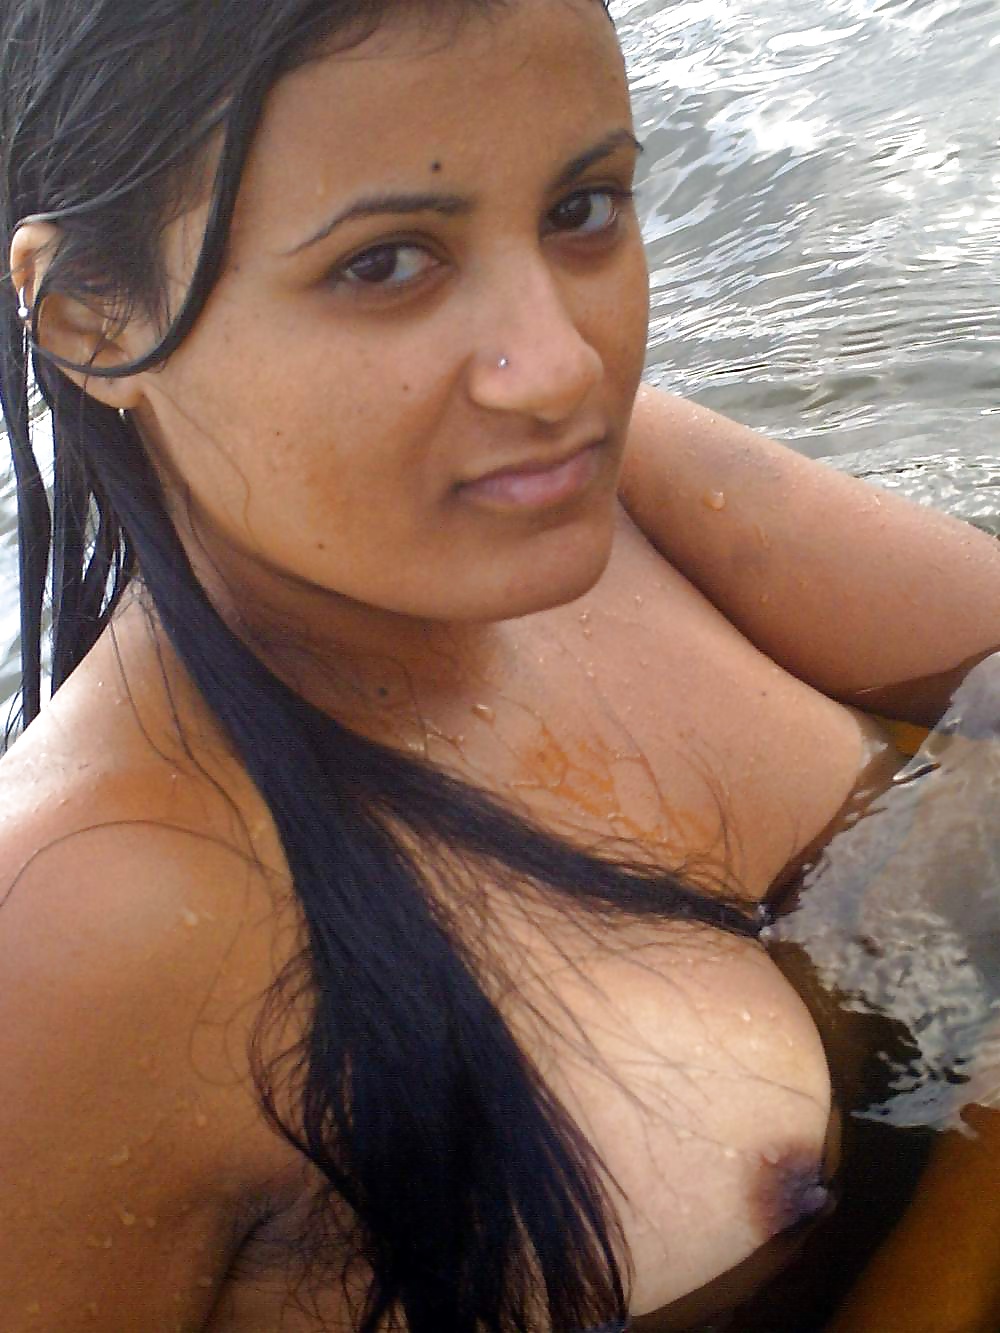 Indian Bath - Indian River Bath Porn Pictures, XXX Photos, Sex Images #1847435 - PICTOA